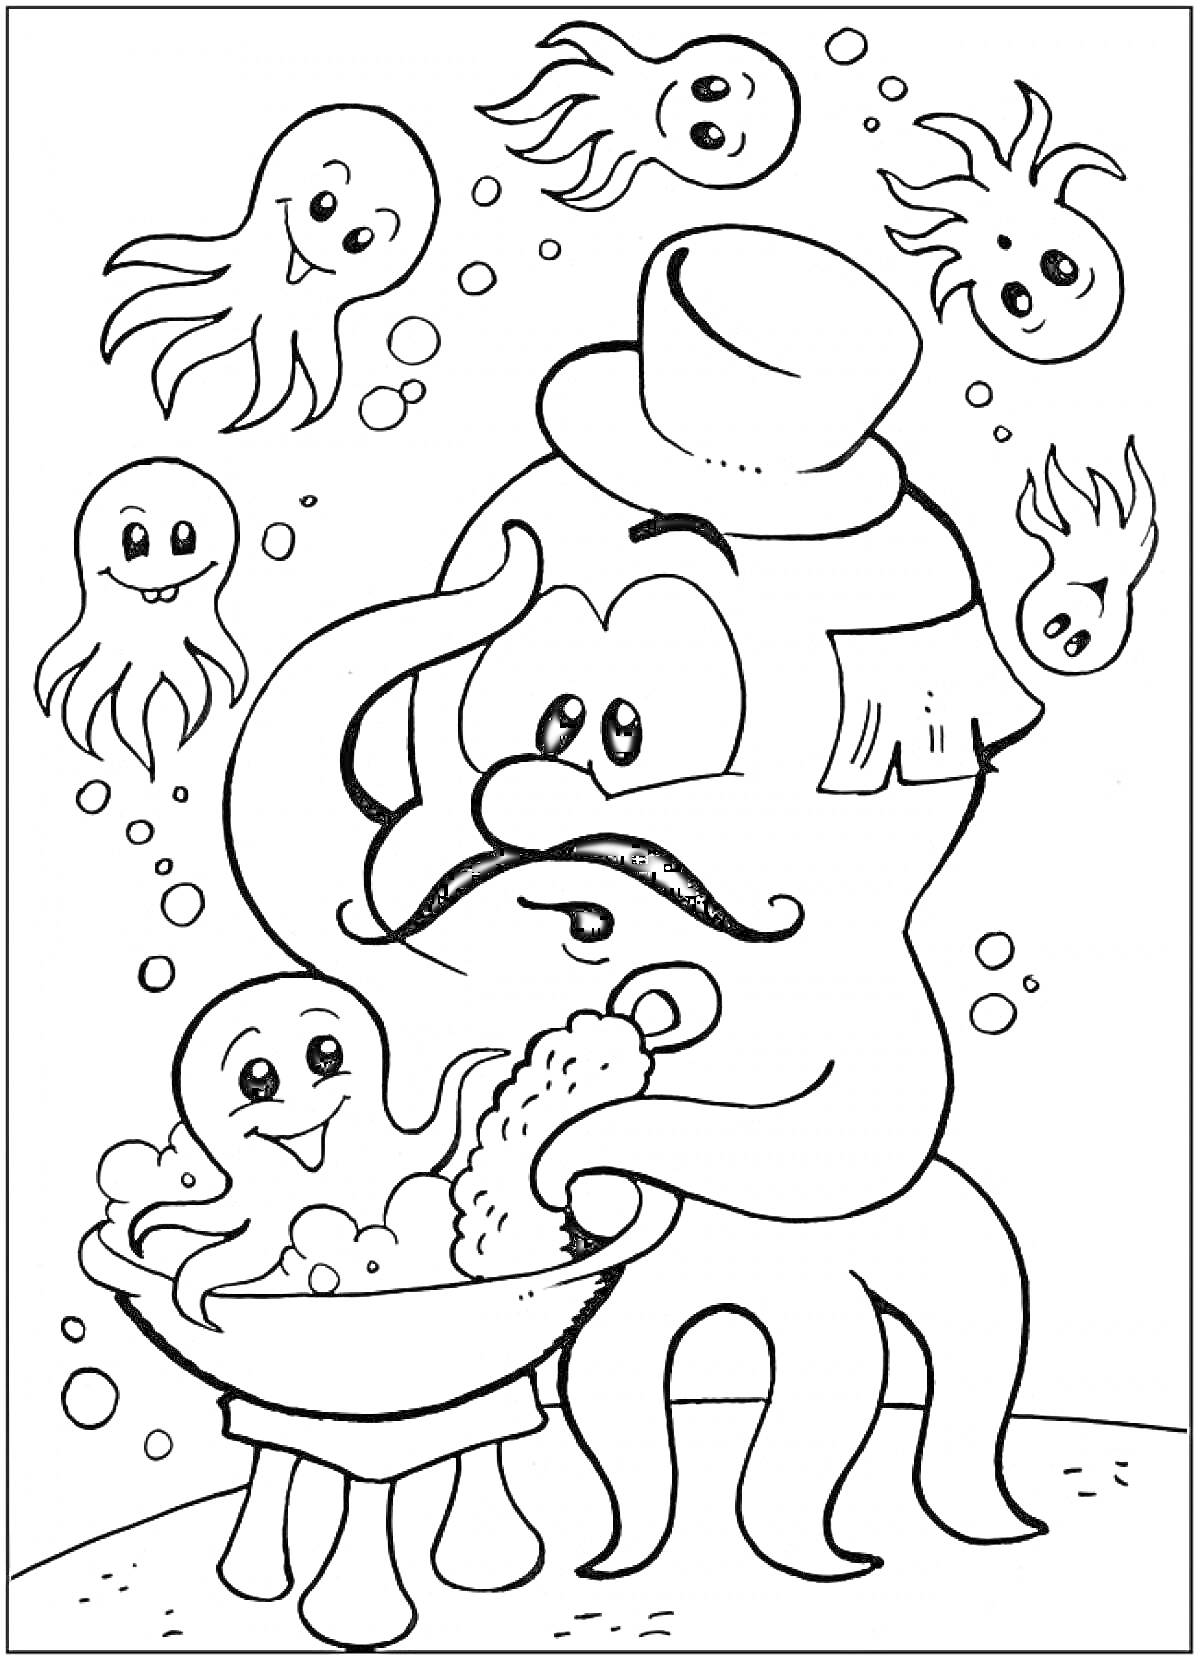 Раскраска Осьминог с шляпой купает малыша осьминога в тазике, окружённый маленькими осьминогами